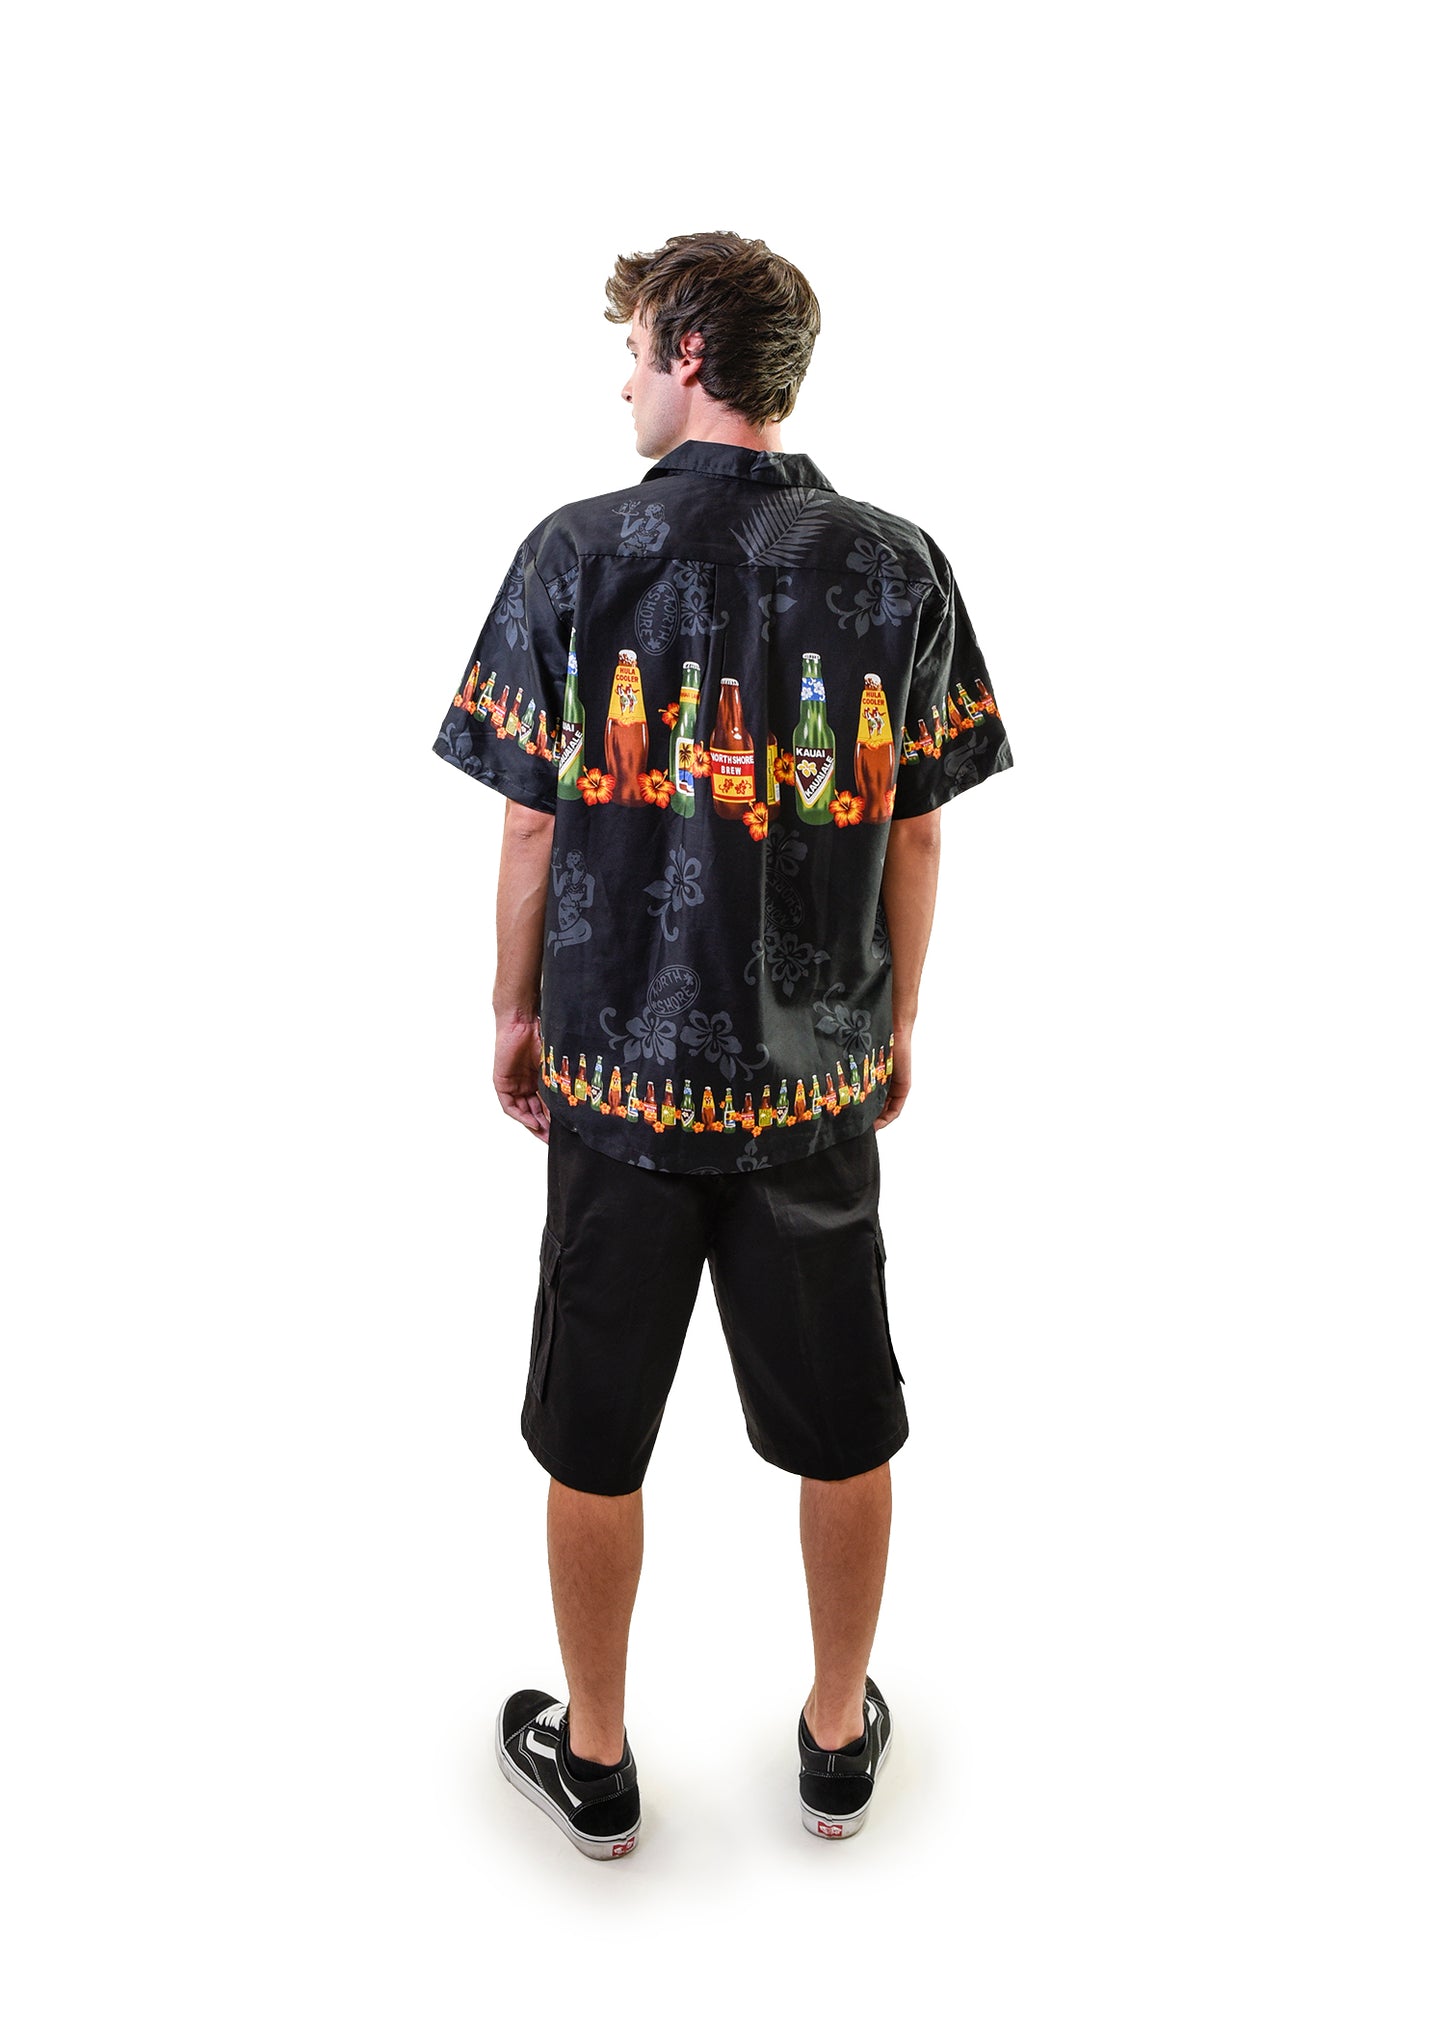 Men's Hawaiian Shirt, Beer Bottles